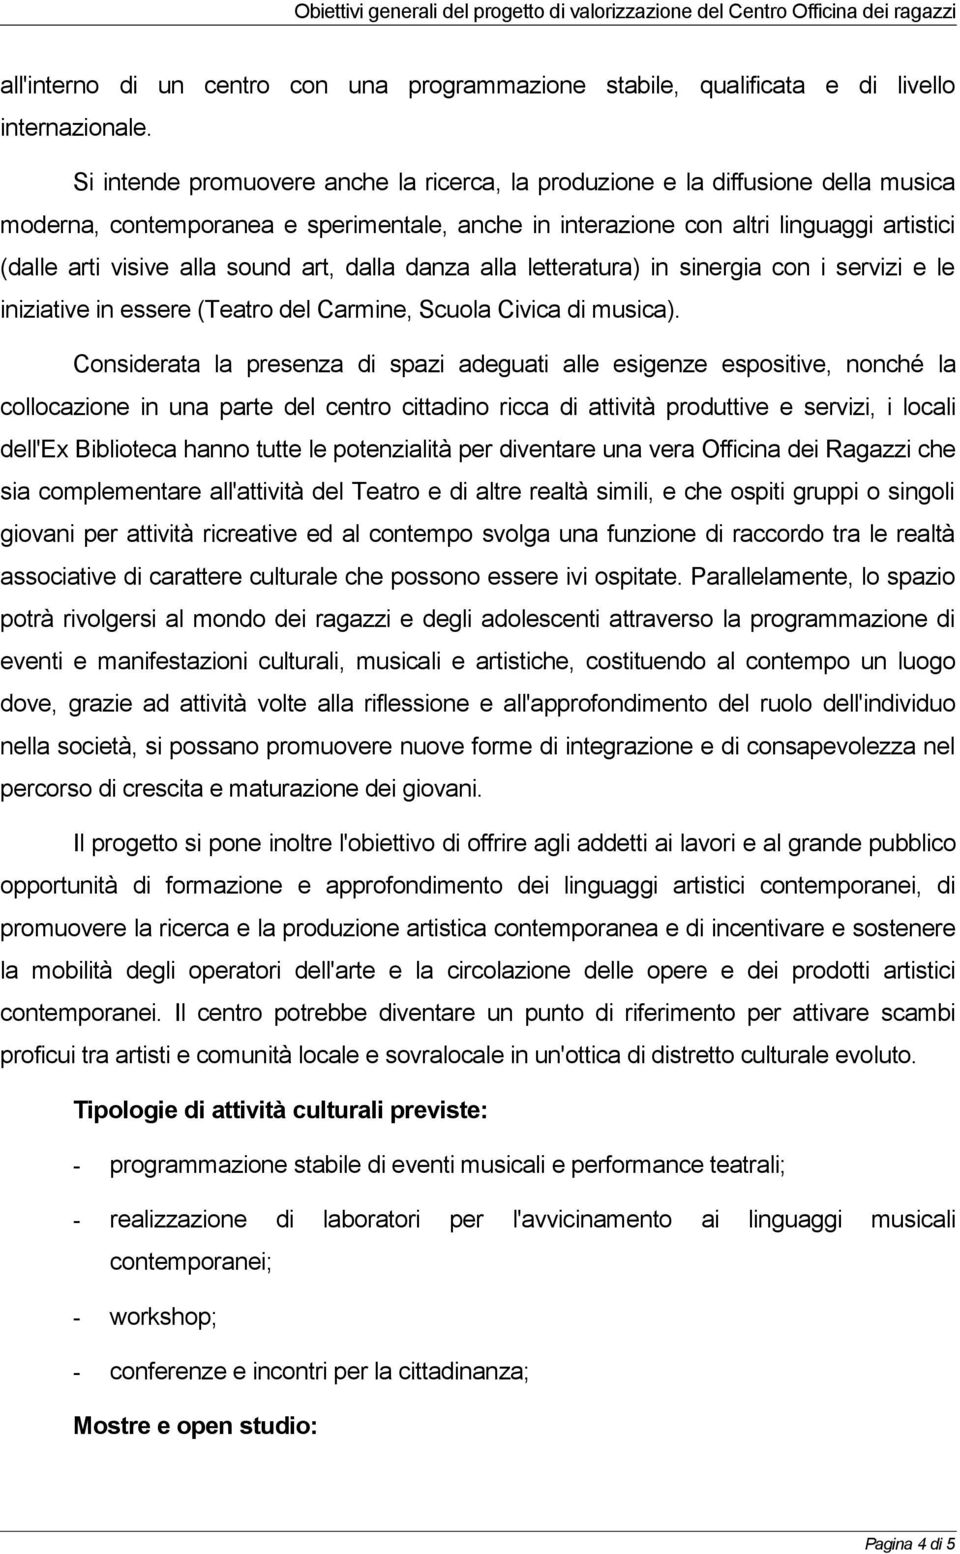 sound art, dalla danza alla letteratura) in sinergia con i servizi e le iniziative in essere (Teatro del Carmine, Scuola Civica di musica).